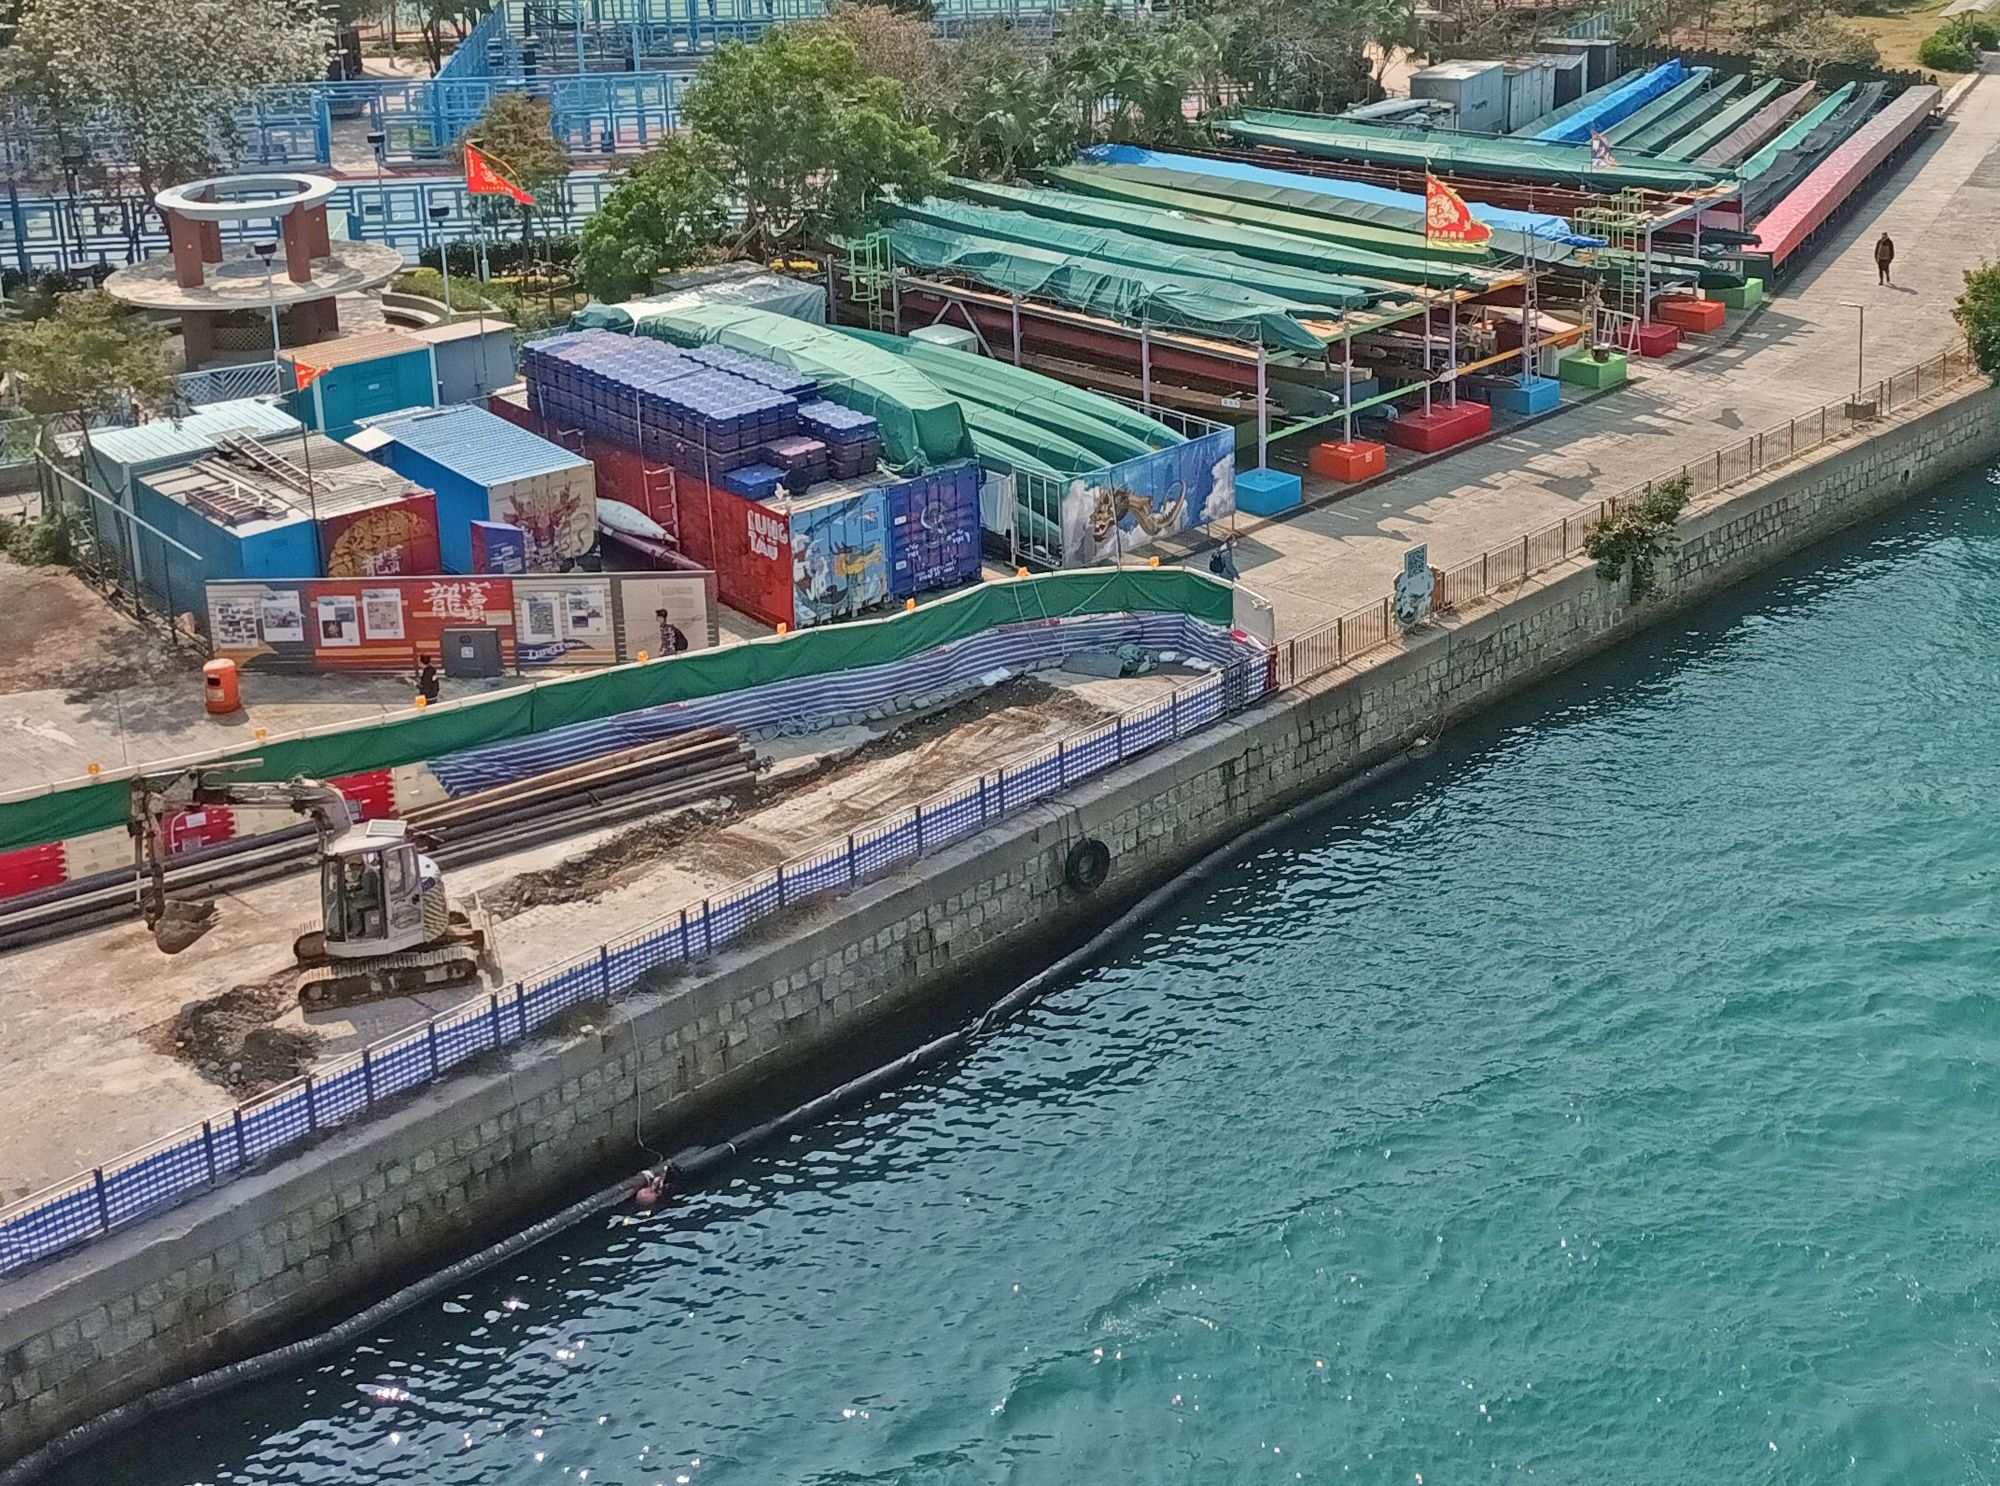 鴨脷洲東北角正加設登岸設施，便利公眾人士上落船隻。